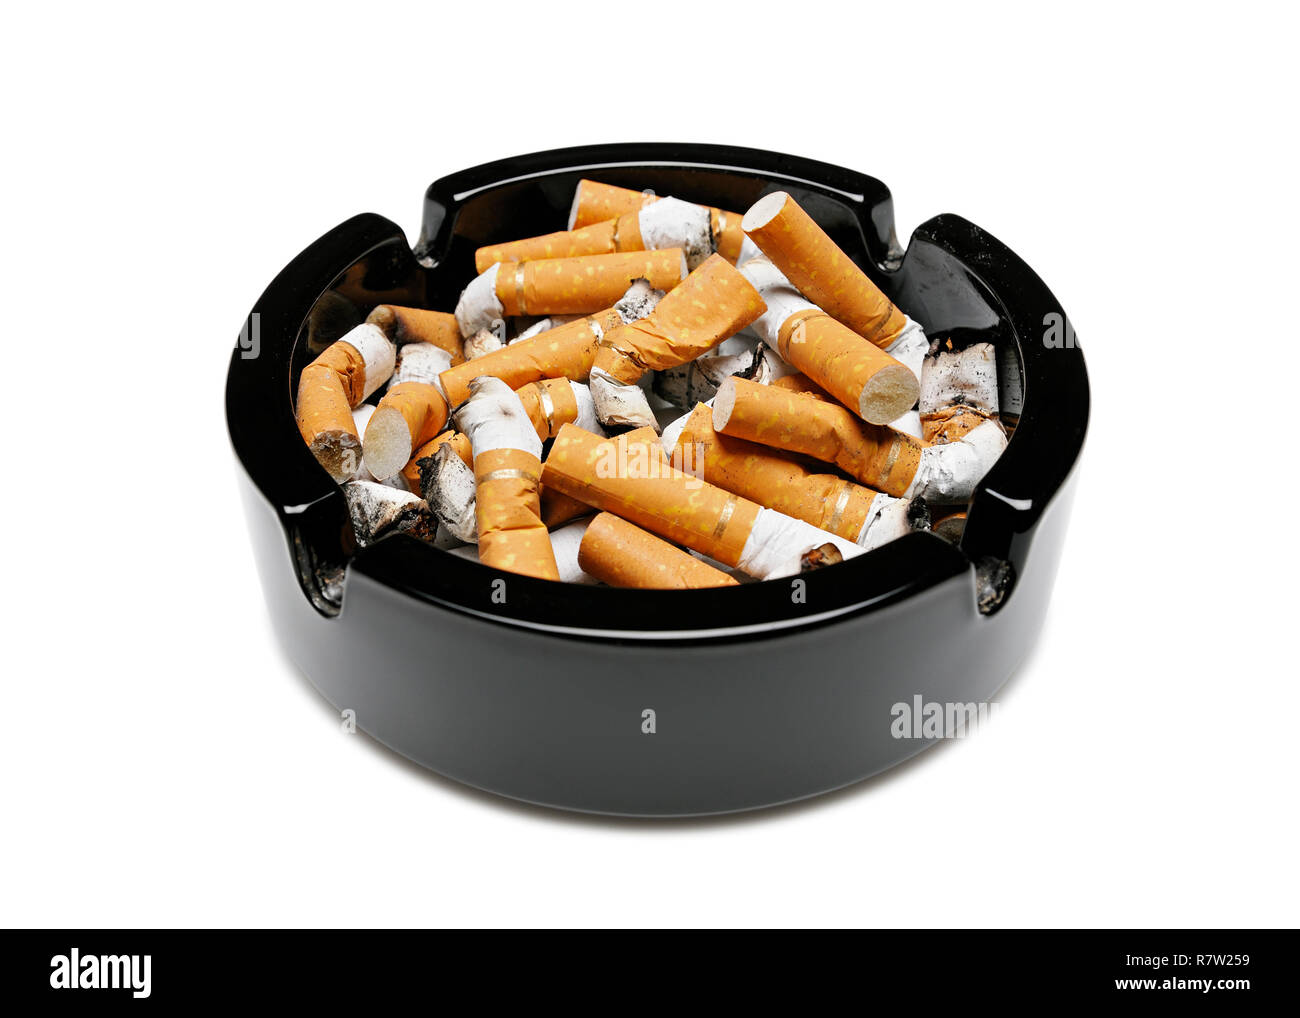 Posacenere pieno di mozziconi di sigaretta, tagliate Foto Stock